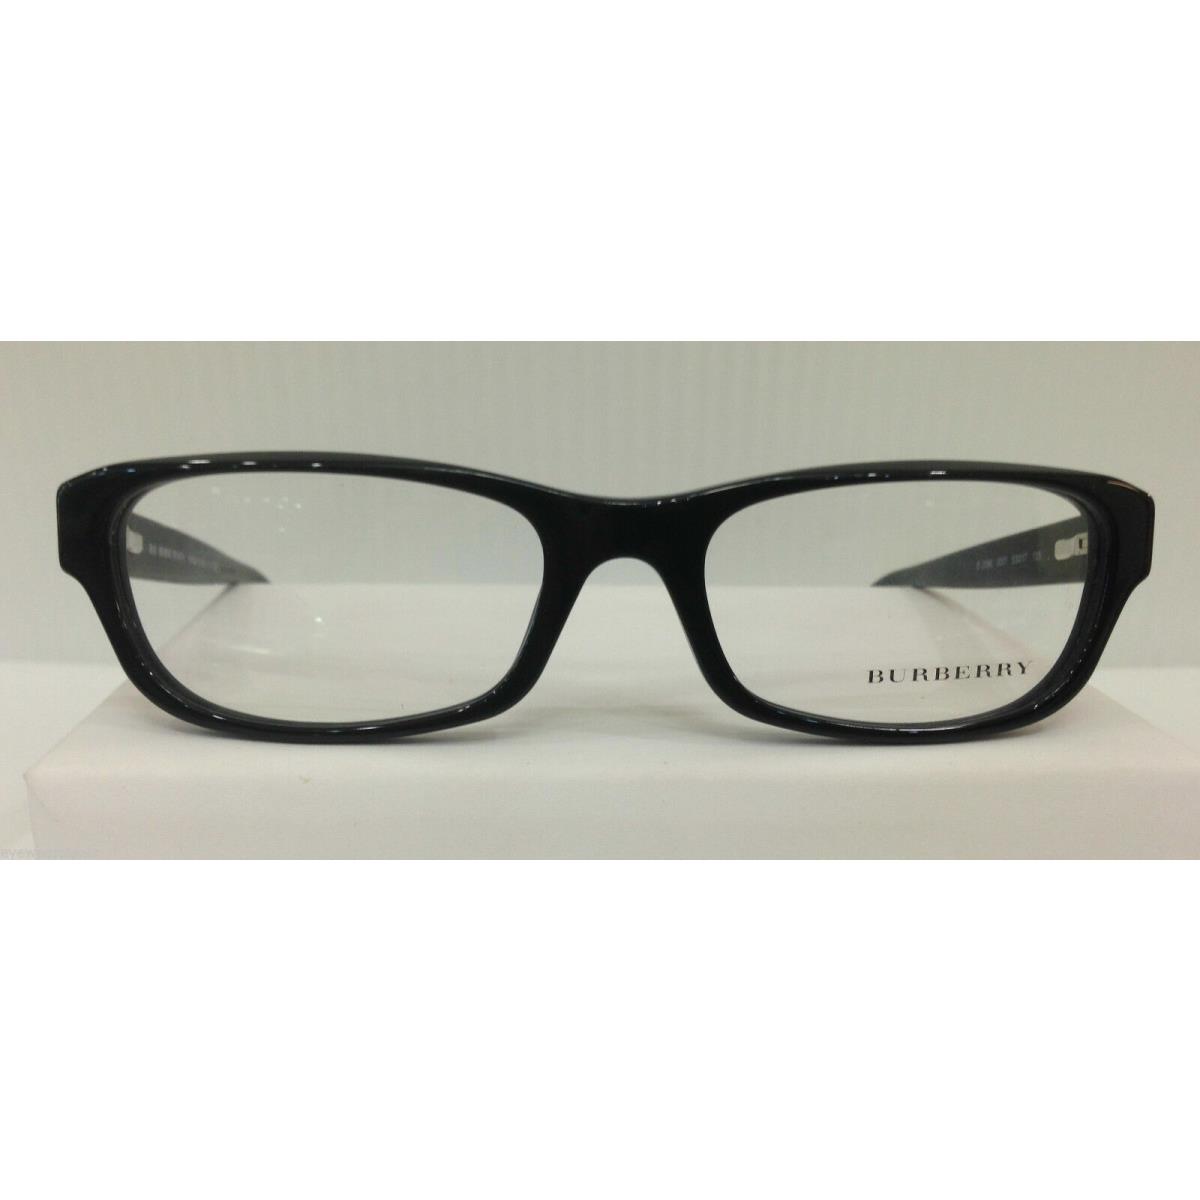 Burberry lunettes monture Burberry B 2096 3022 51-17 135 avec étui 